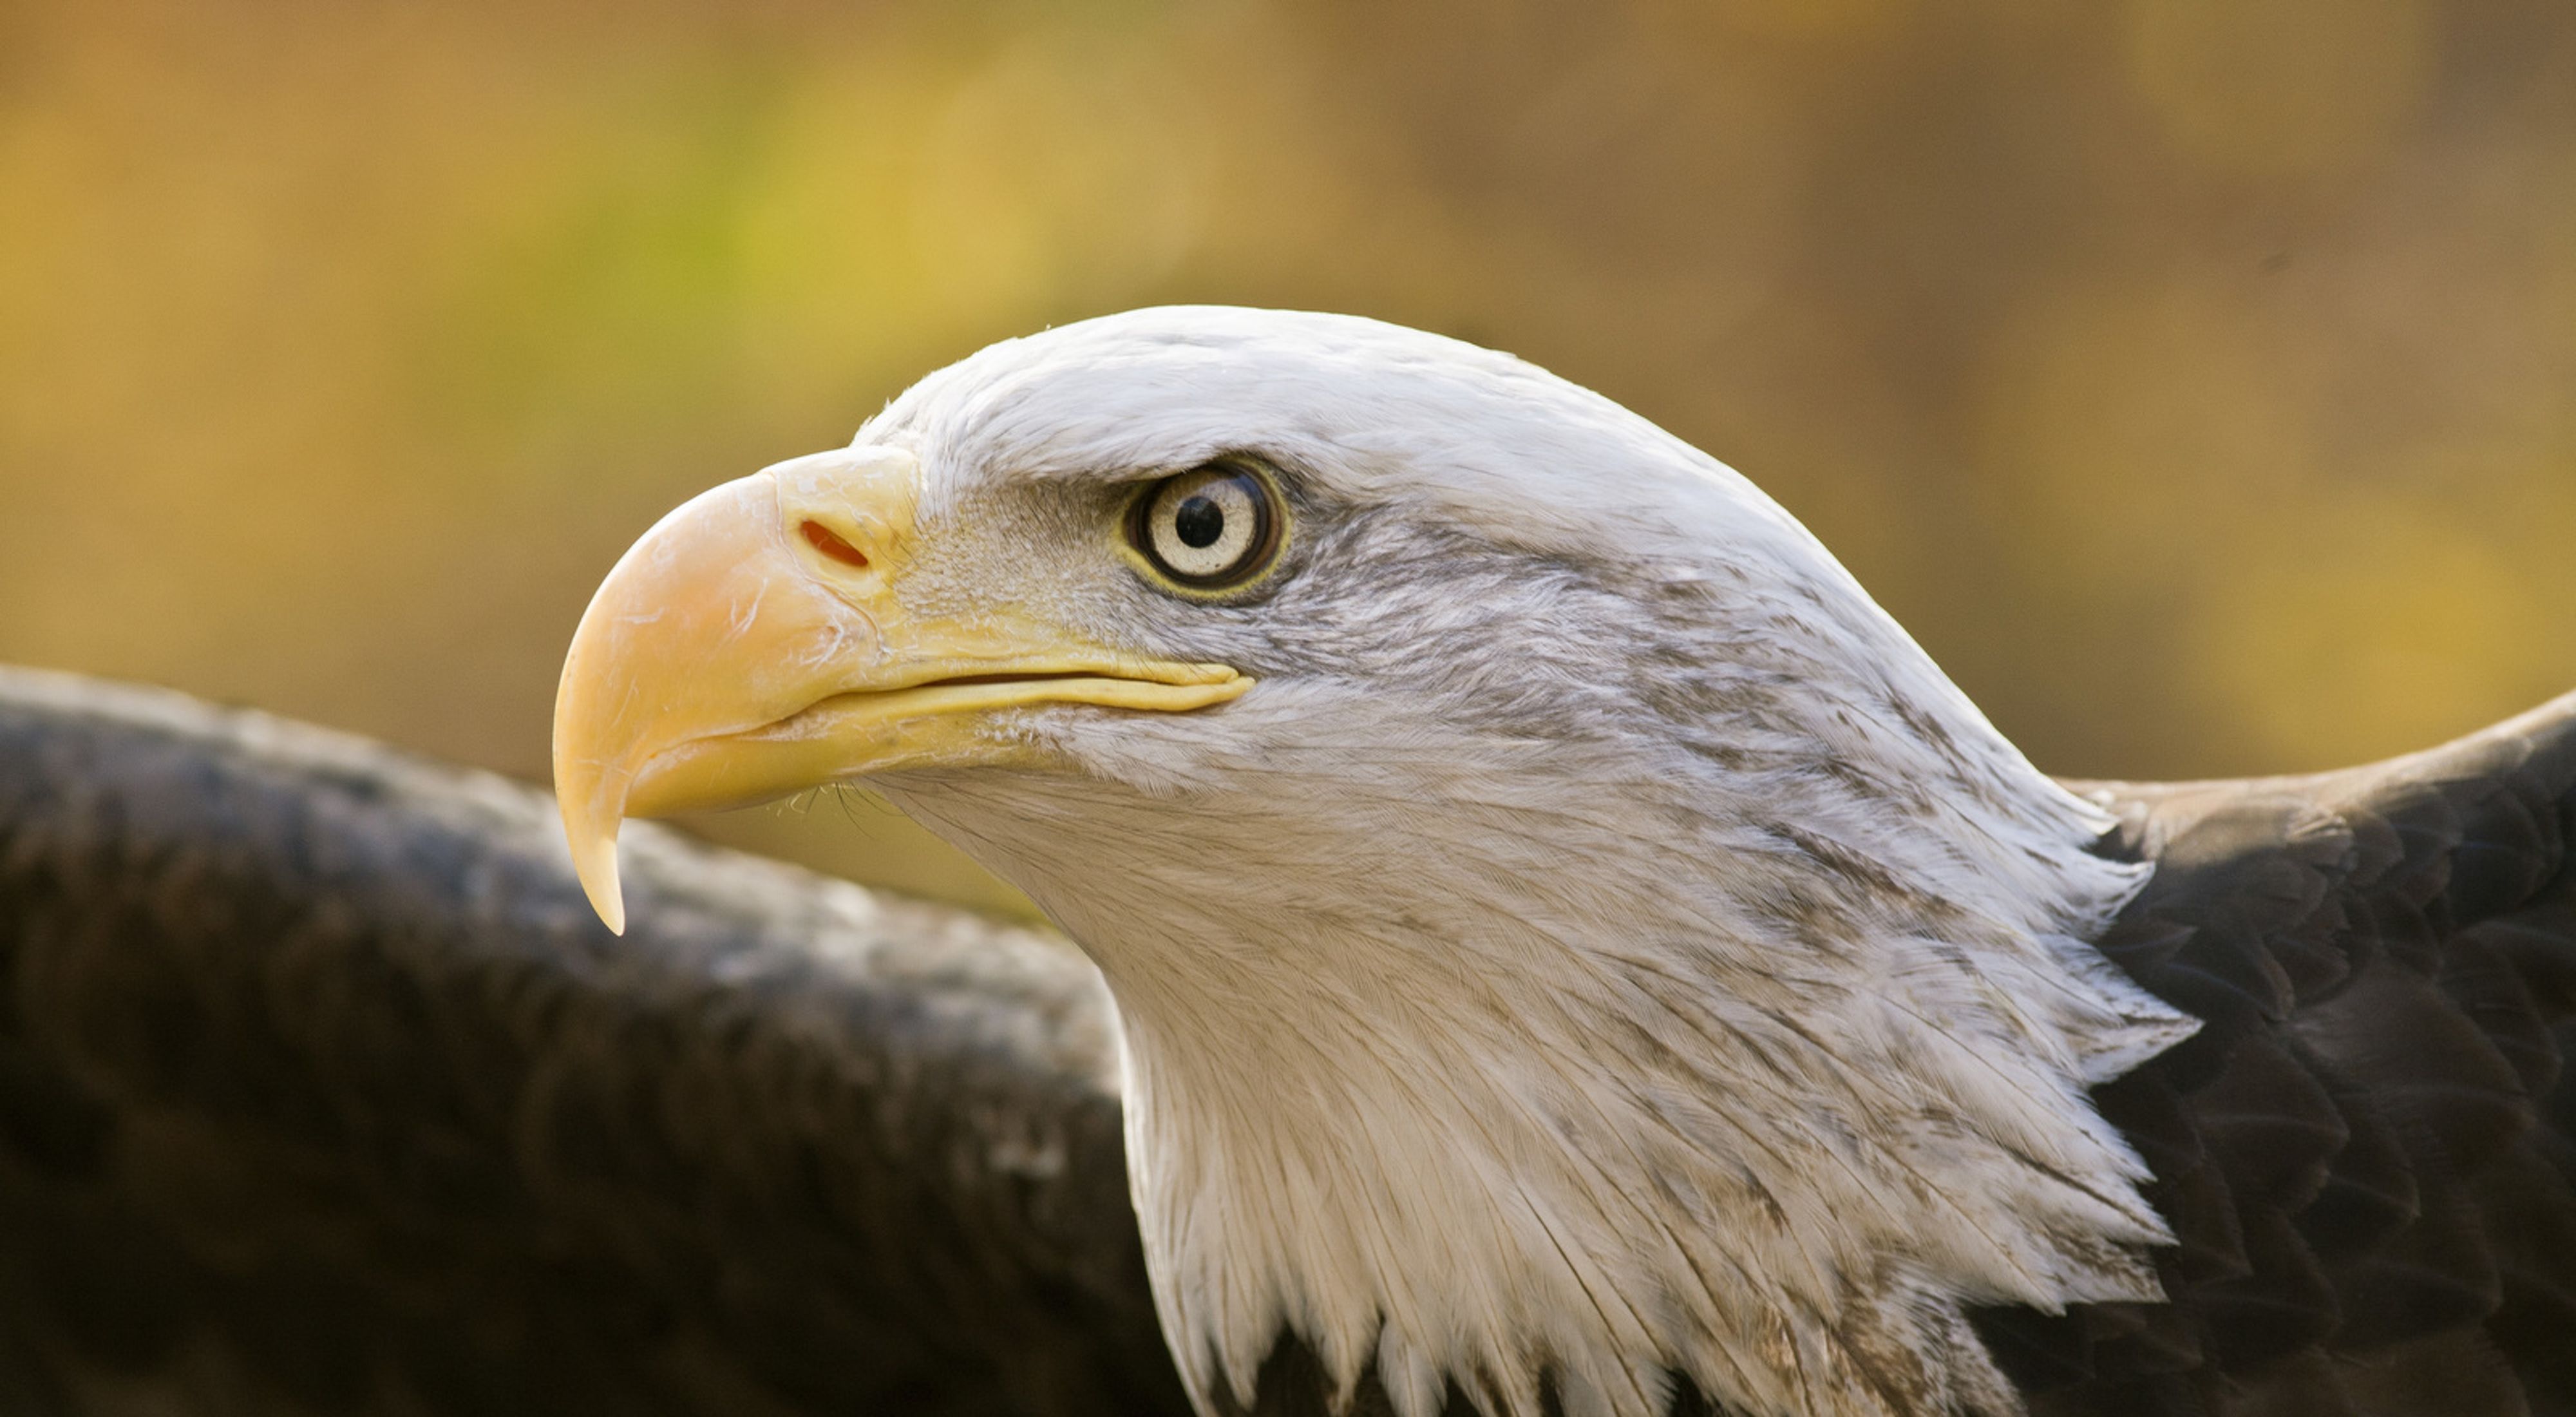 Close-up of bald eagle head.